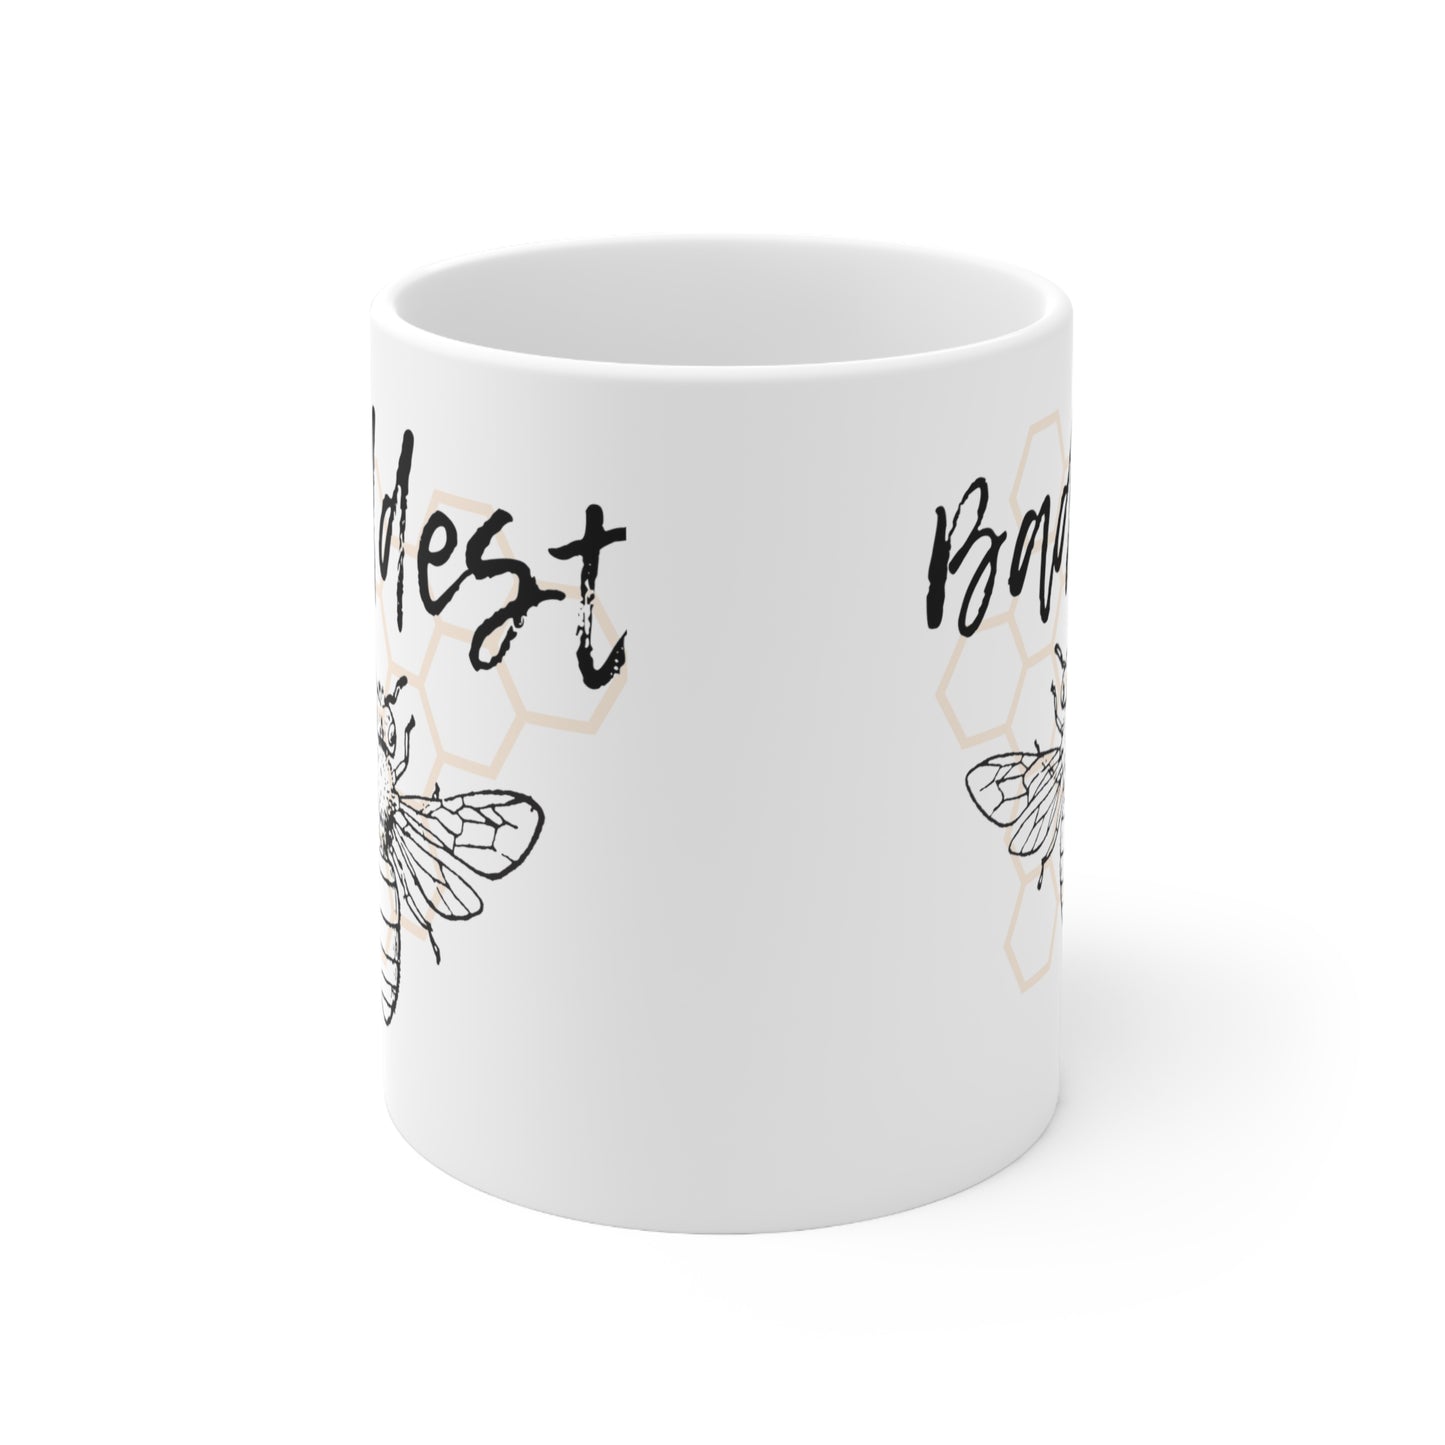 Baddest 'B' Ceramic Mug 11oz